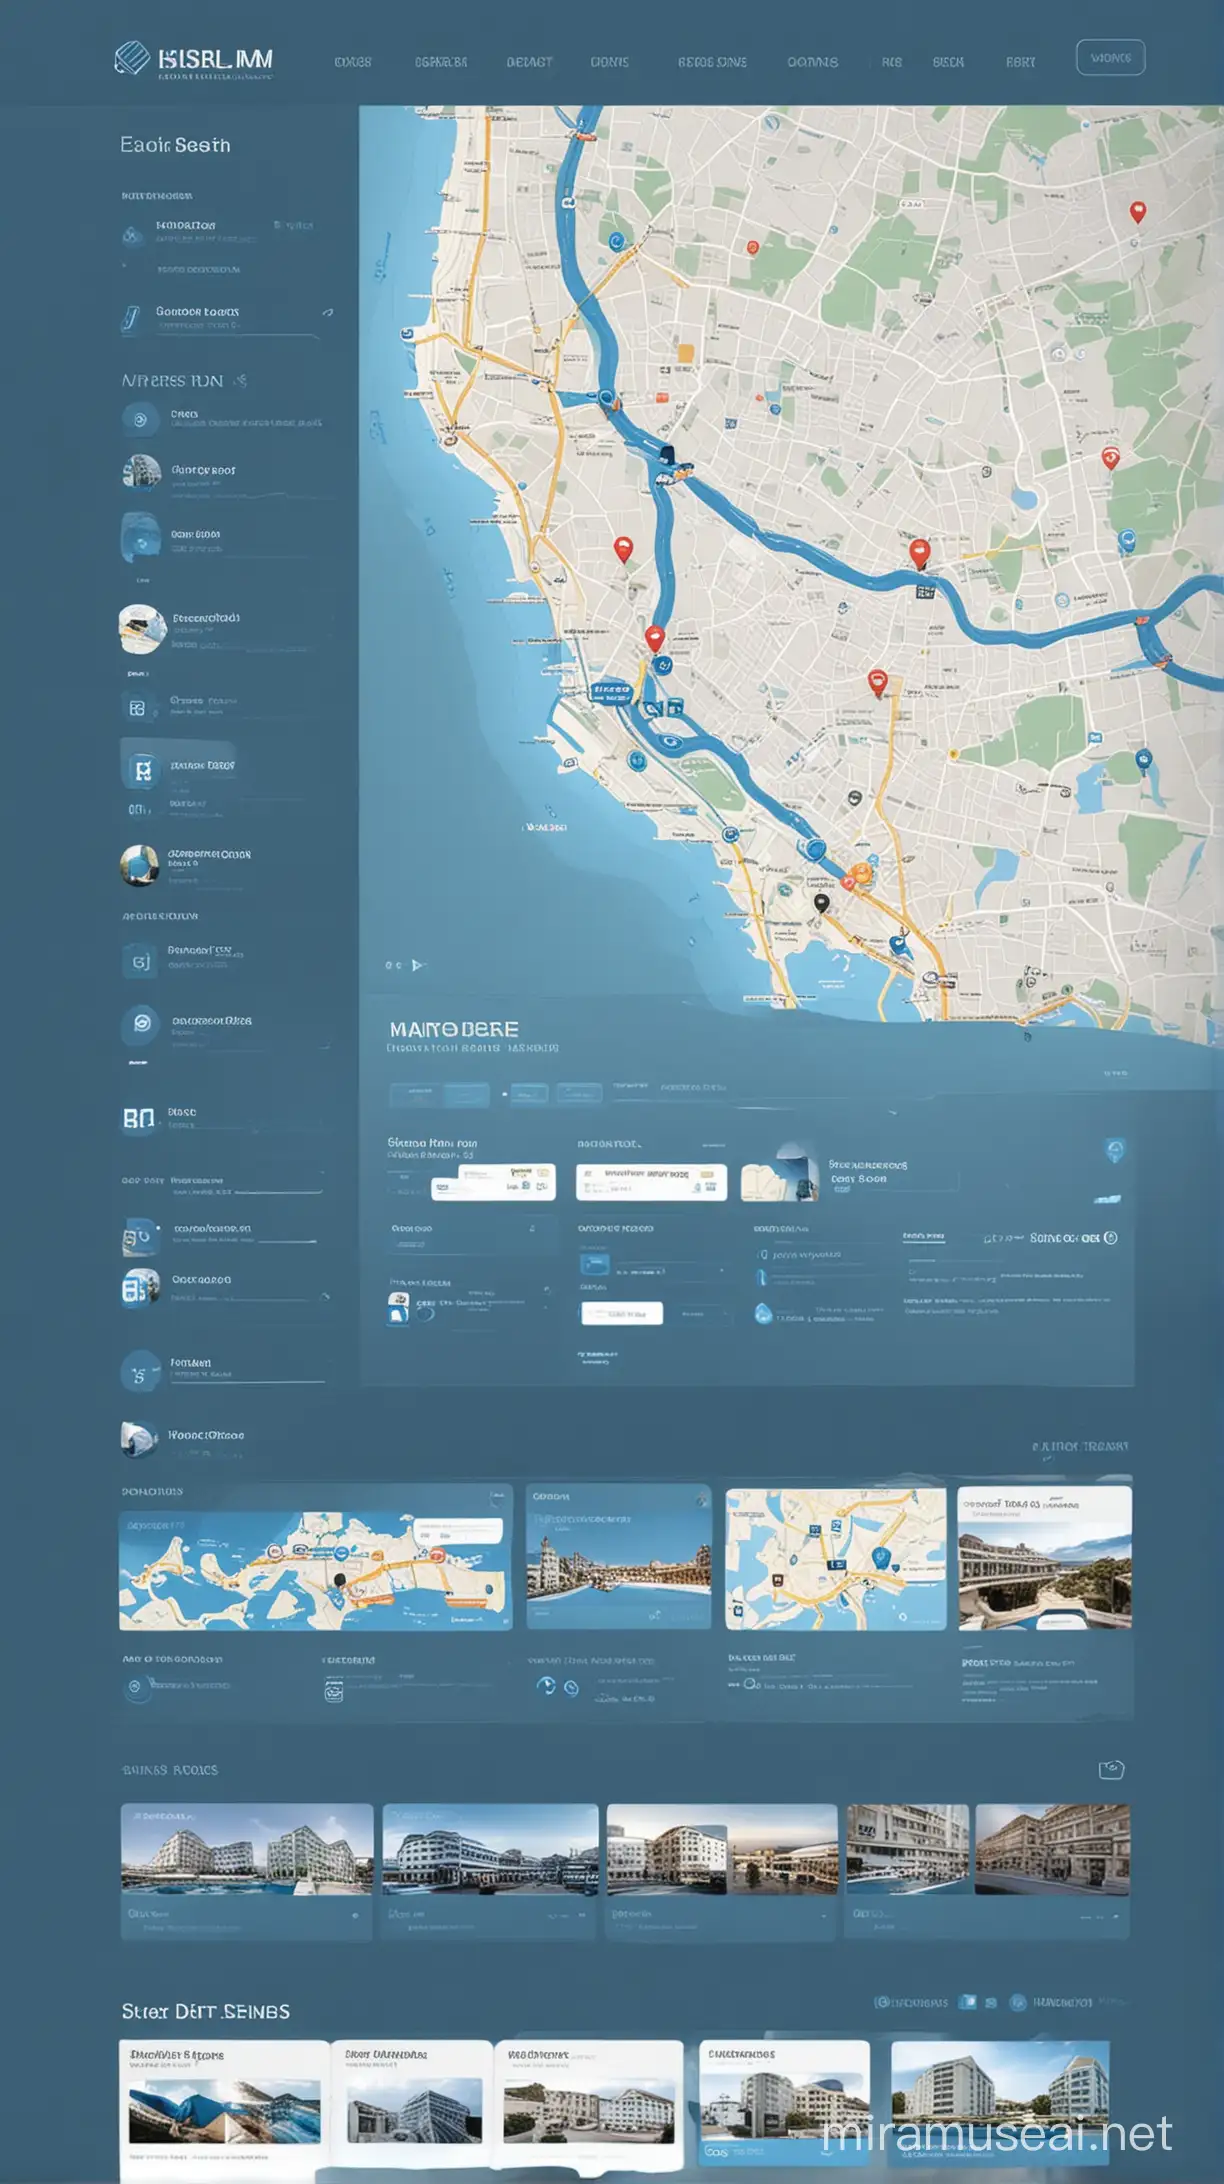 современный дизайн сайта в голубых тонах, поиском по карте, удобный интерфейс бронирования отелей